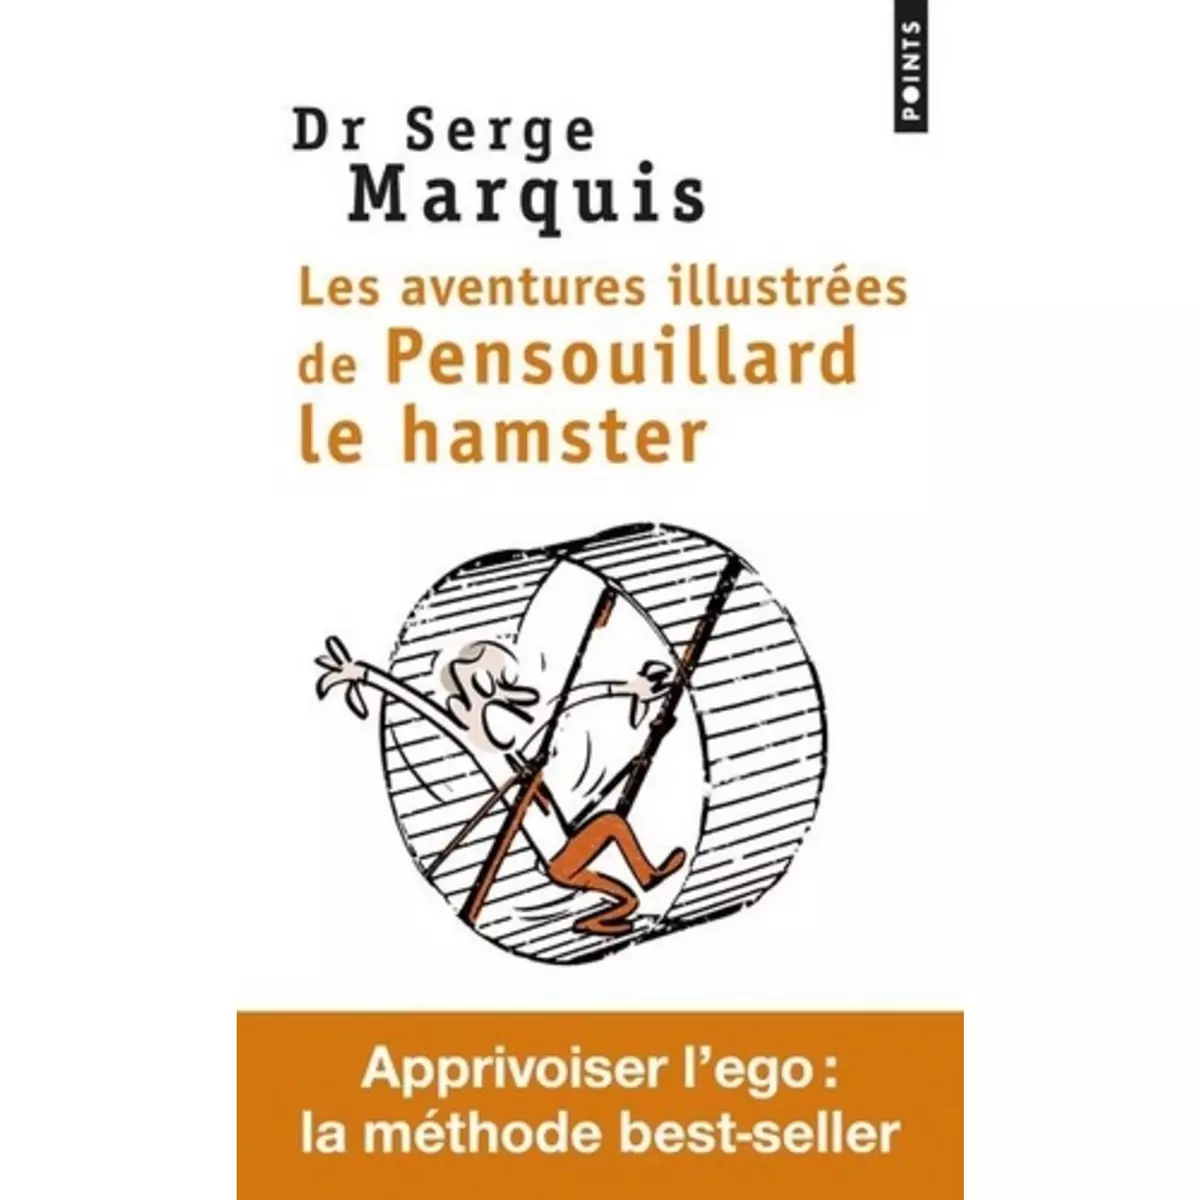  LES AVENTURES ILLUSTREES DE PENSOUILLARD LE HAMSTER. COMMENT APPRIVOISER L'EGO, Marquis Serge